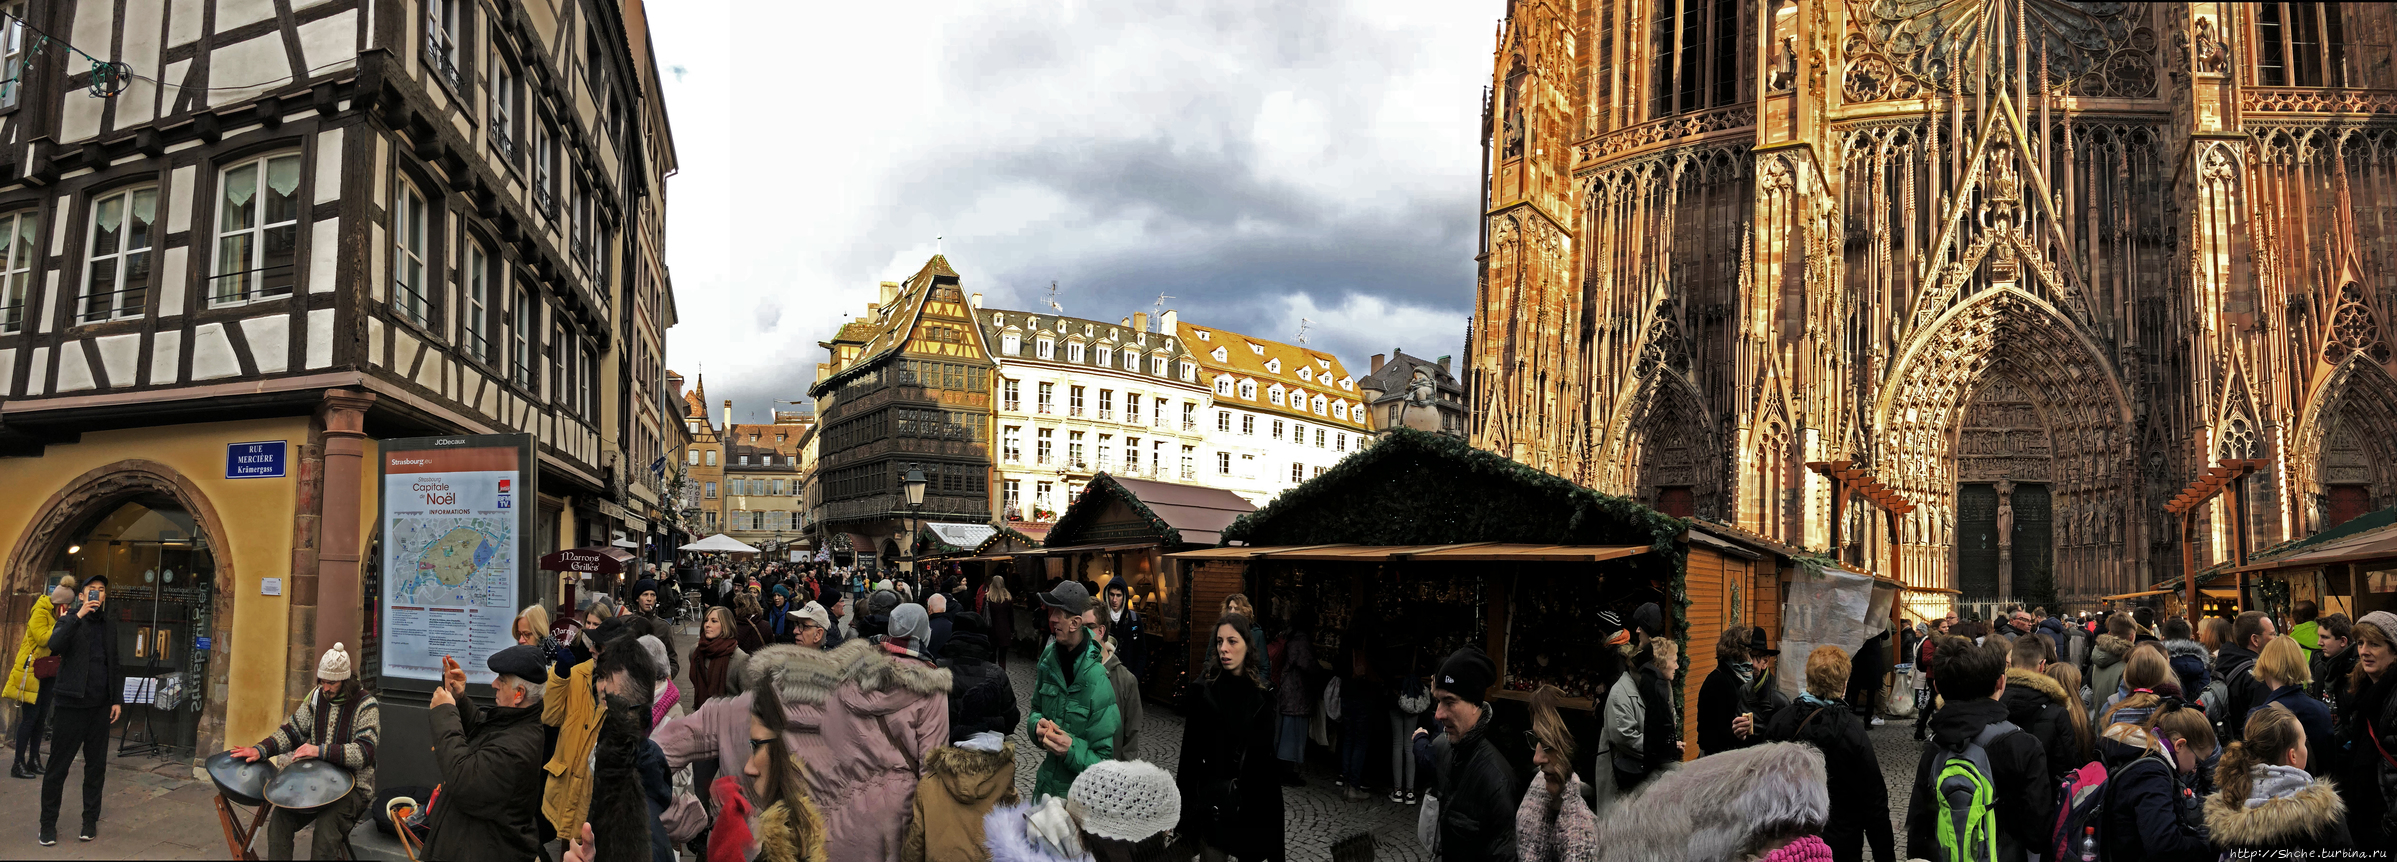 Площадь Кафедраль Страсбург, Франция